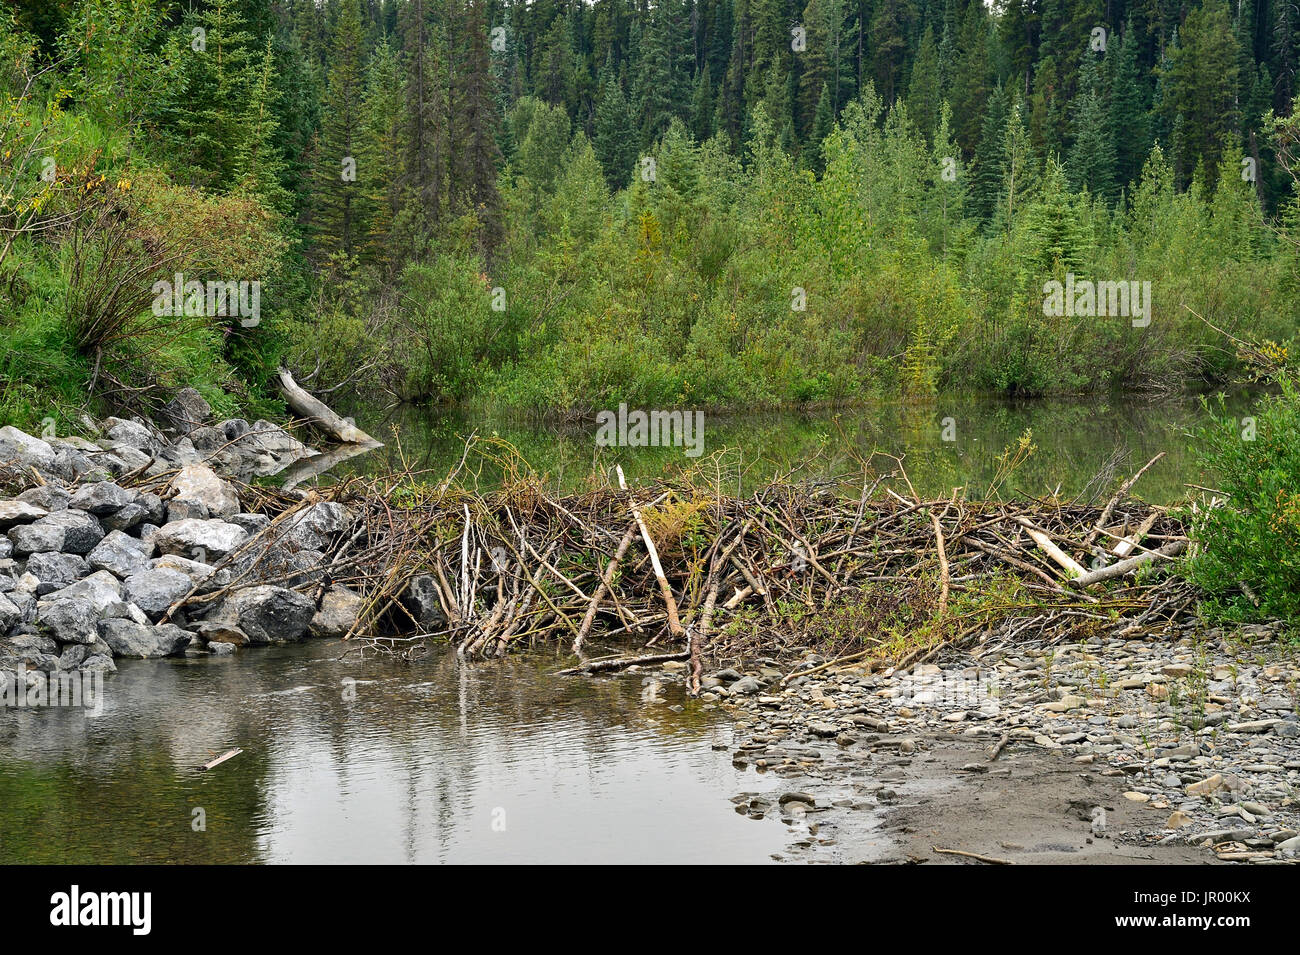 A beaver dam blocking a stream in rural Alberta Canada Stock Photo